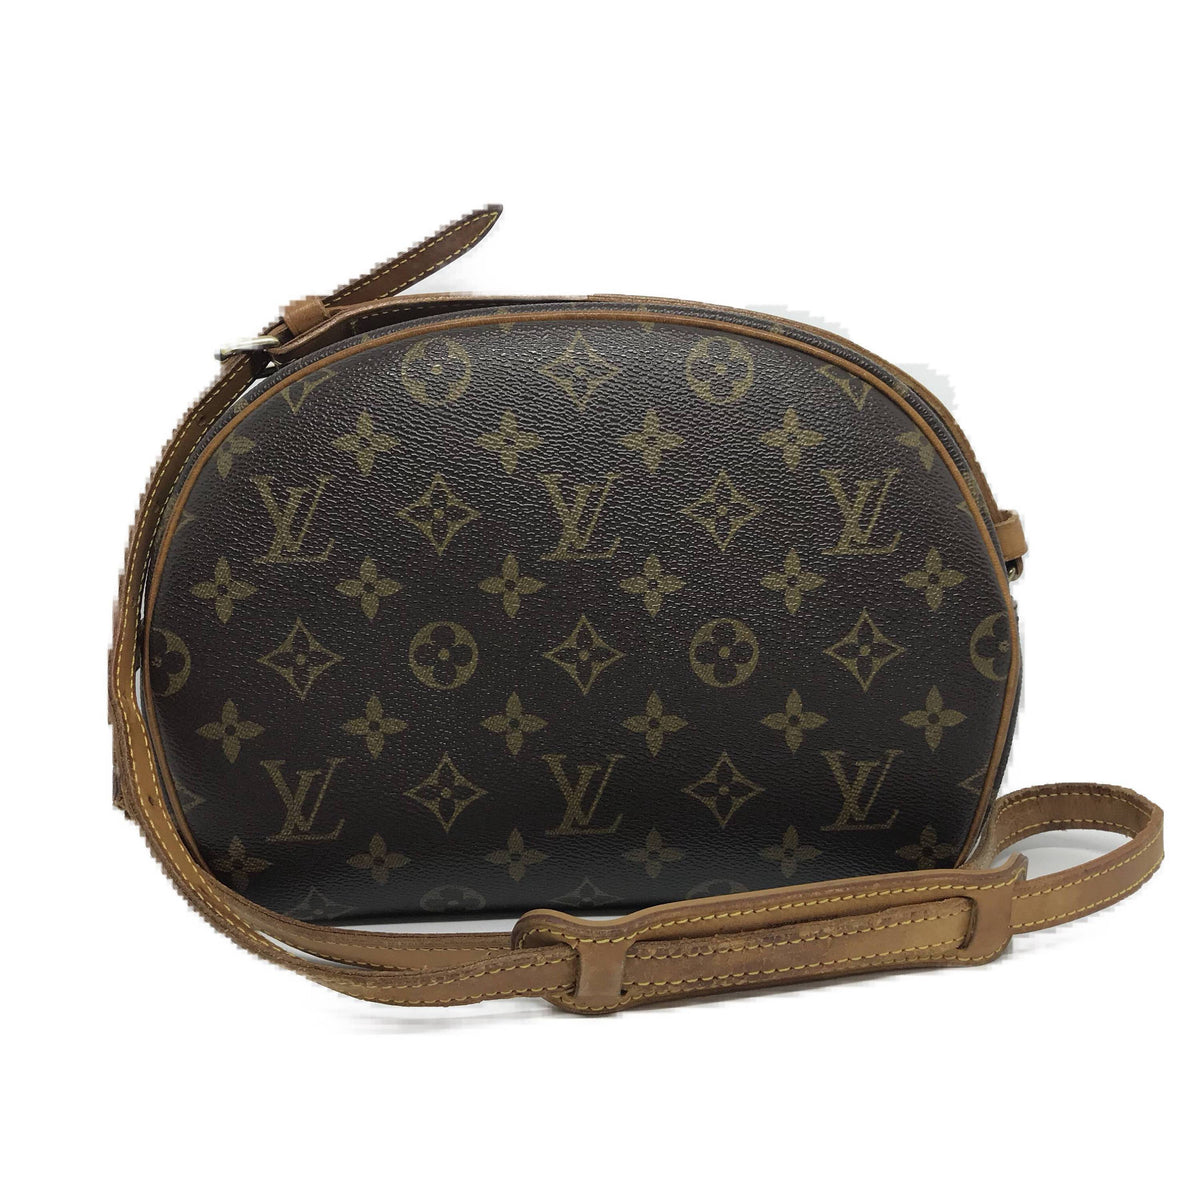 Louis Vuitton Monogram Canvas Leather Blois Crossbody Bag